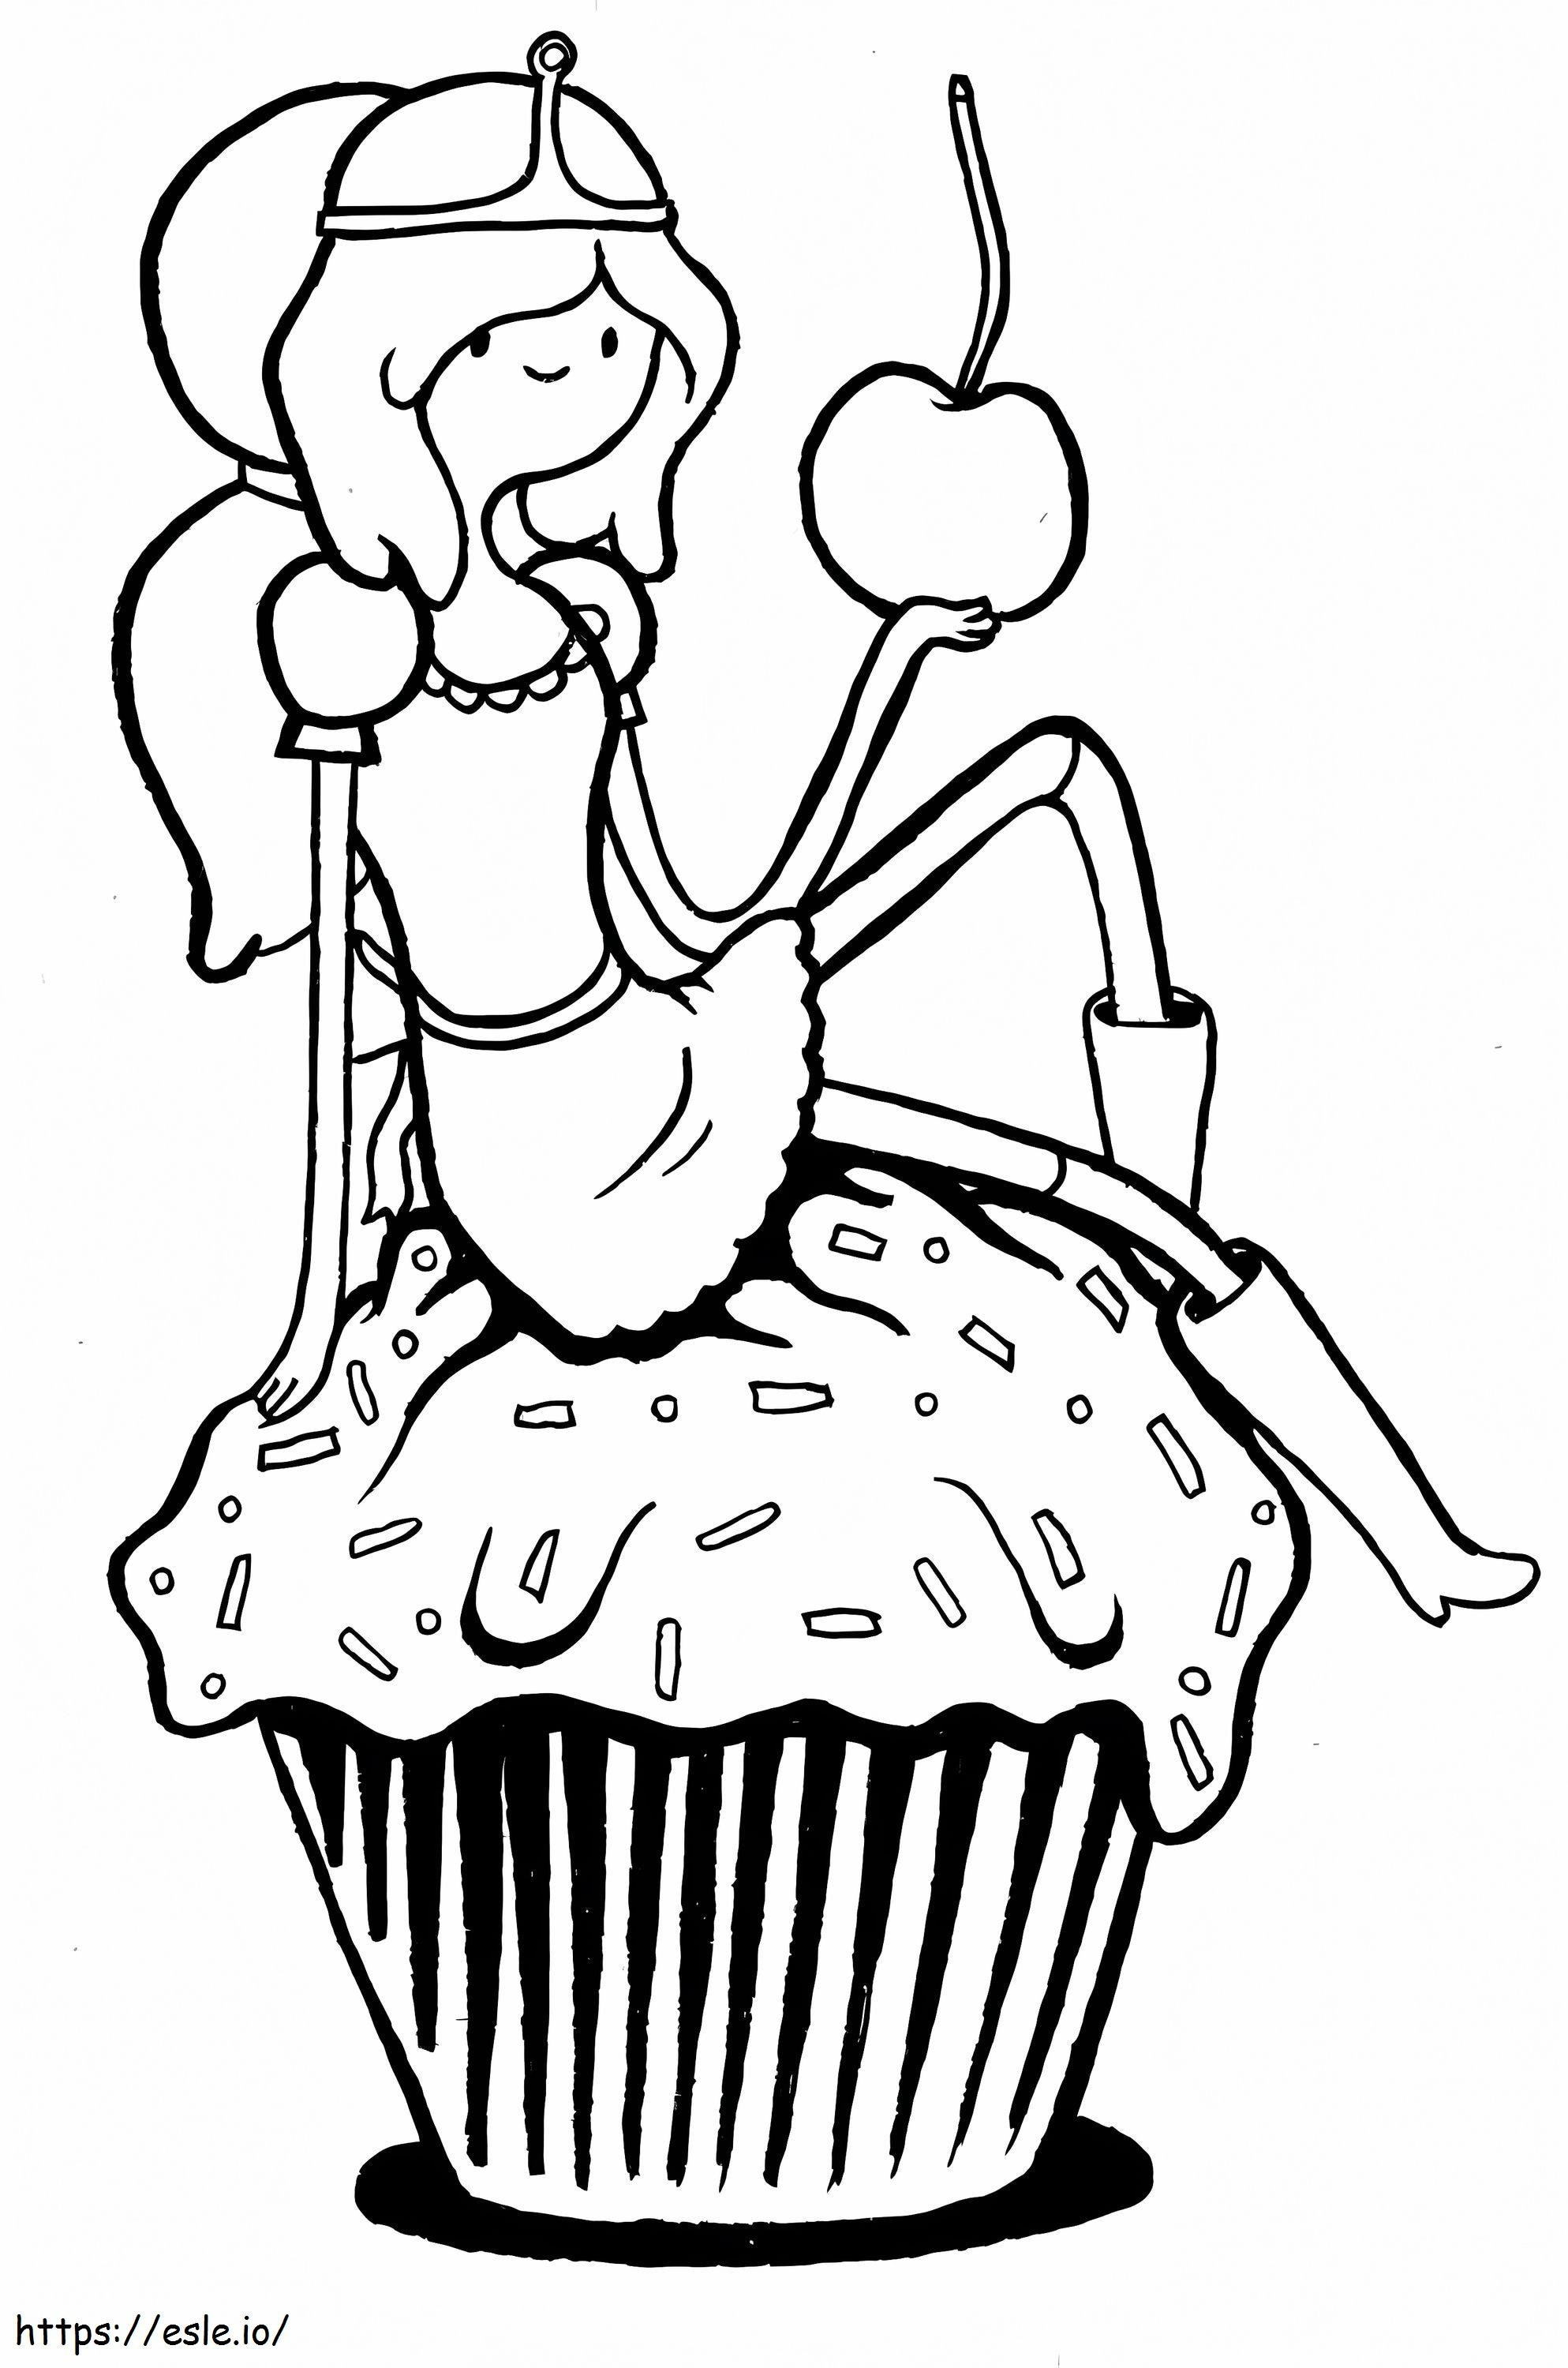 Princesa Jujuba segura a maçã e senta no cupcake para colorir